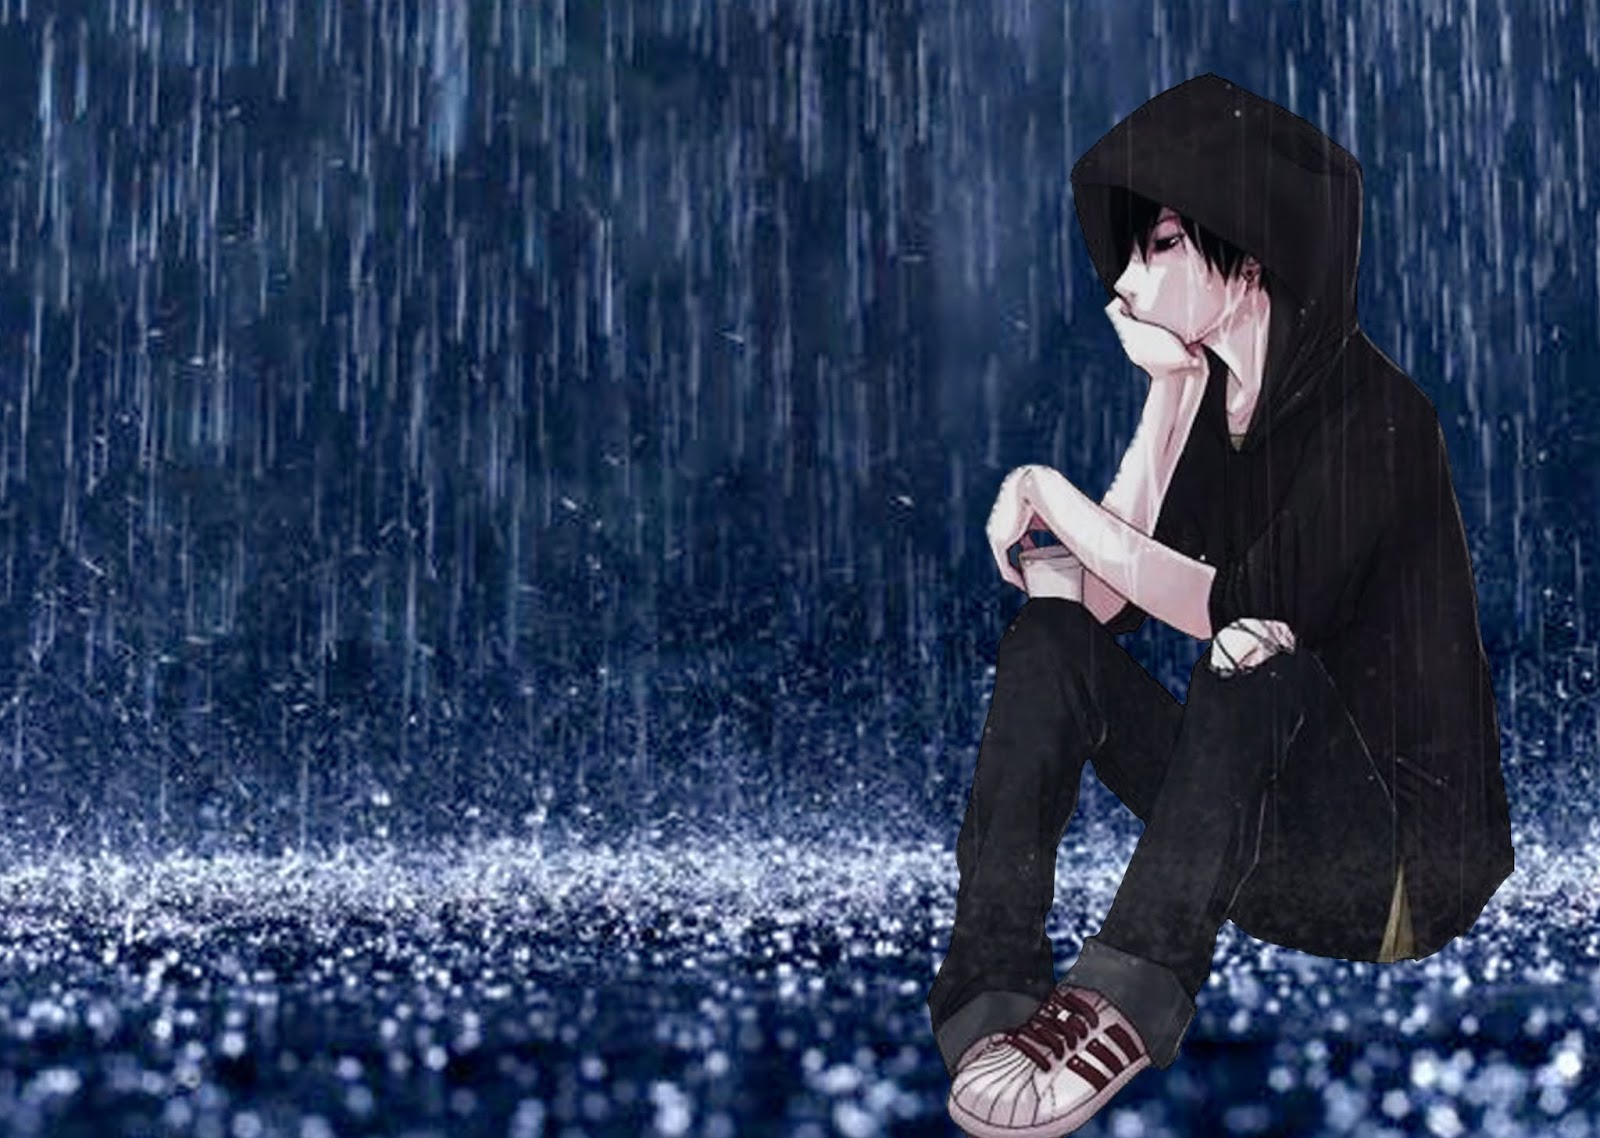 Ảnh hoạt hình chàng trai thất tình ngồi dưới mưa